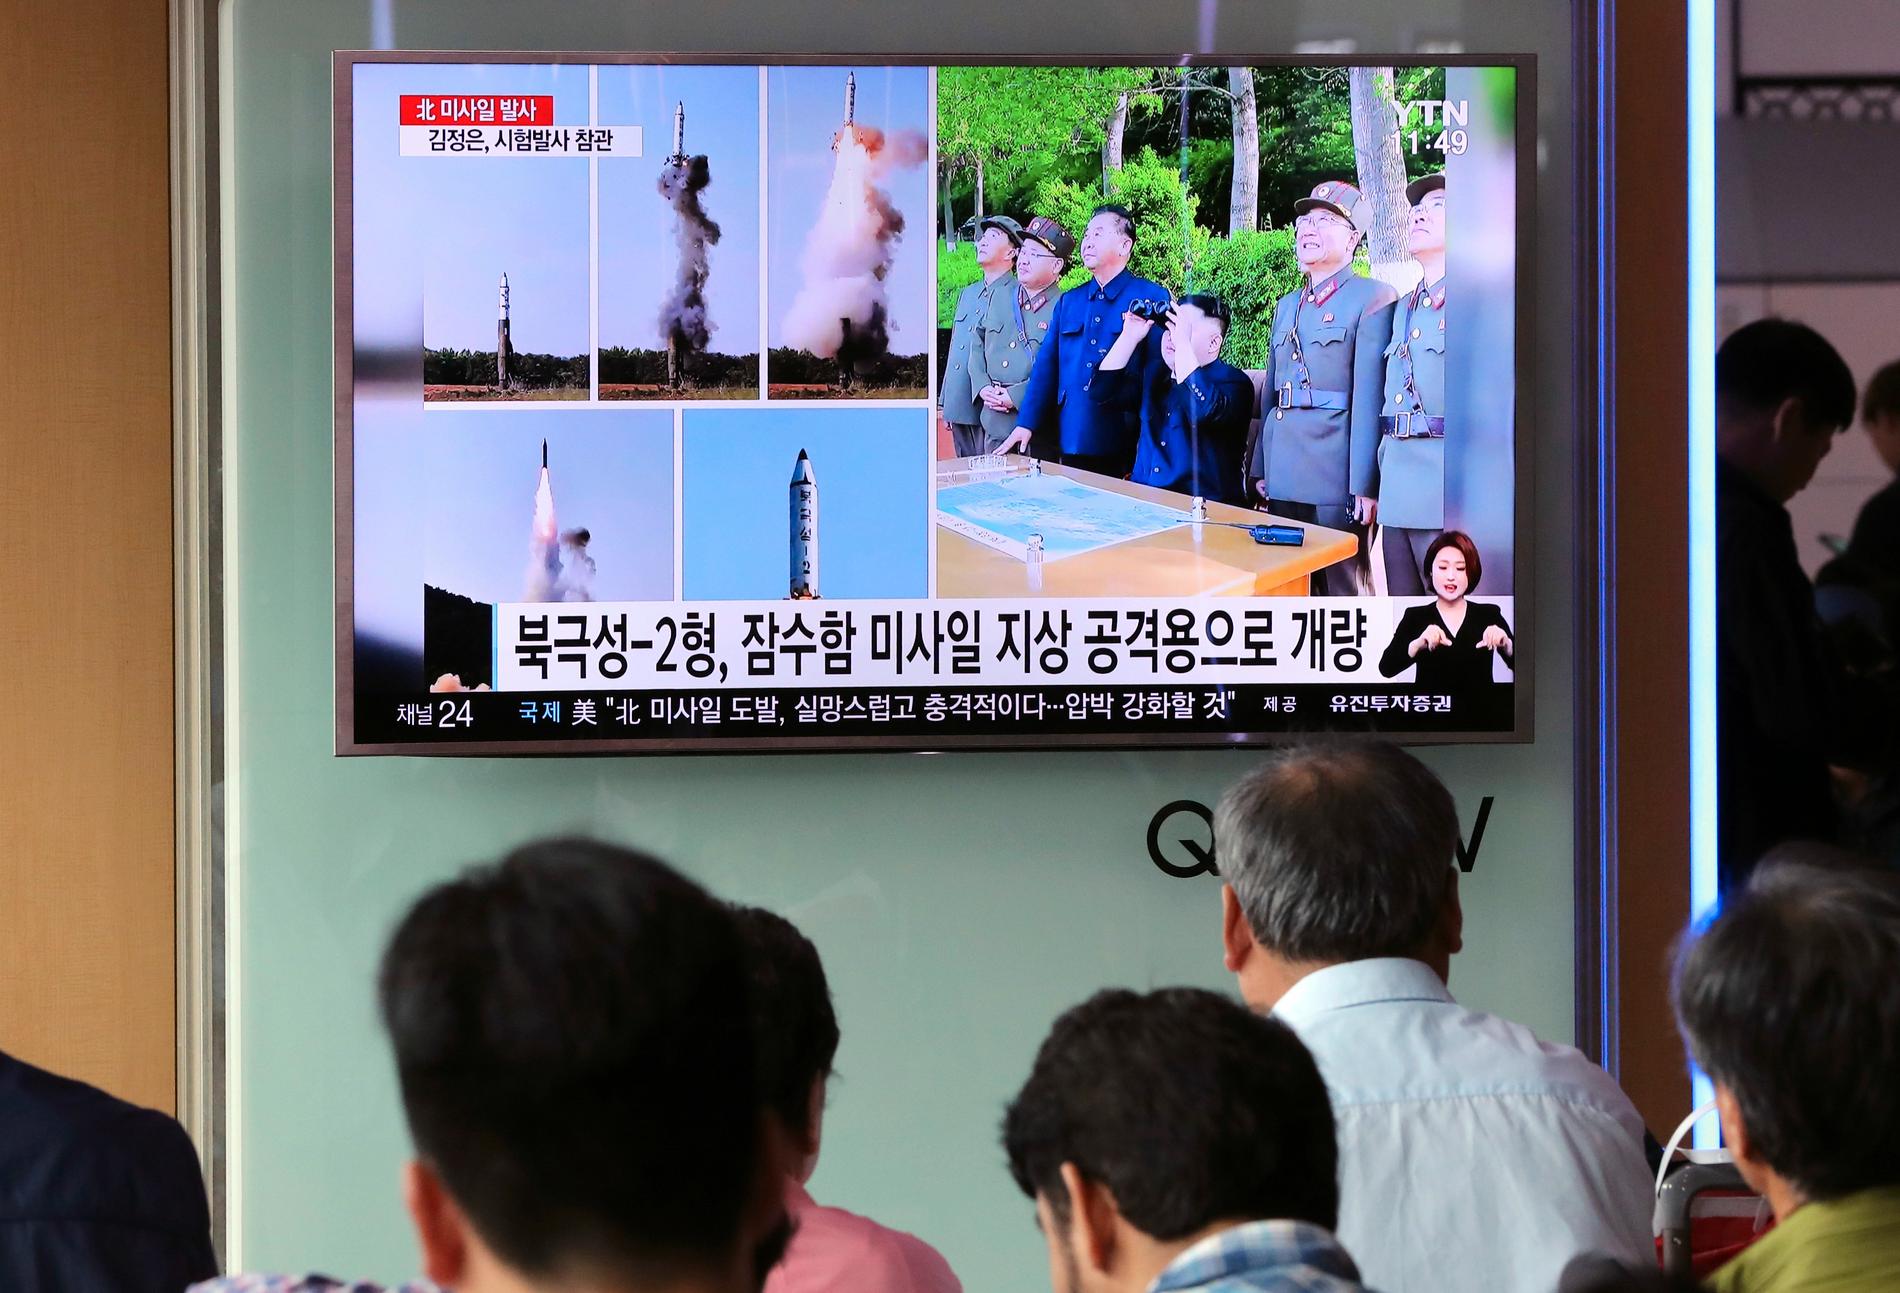 Indirekt nyhetsförmedling à la Korea – sydkoreansk tv visar stillbilder ur den nordkoreanska tidningen Rodong Sinmun, föreställande Kim Jong-Un och nordkoreanska militärer som betraktar helgens robottest.